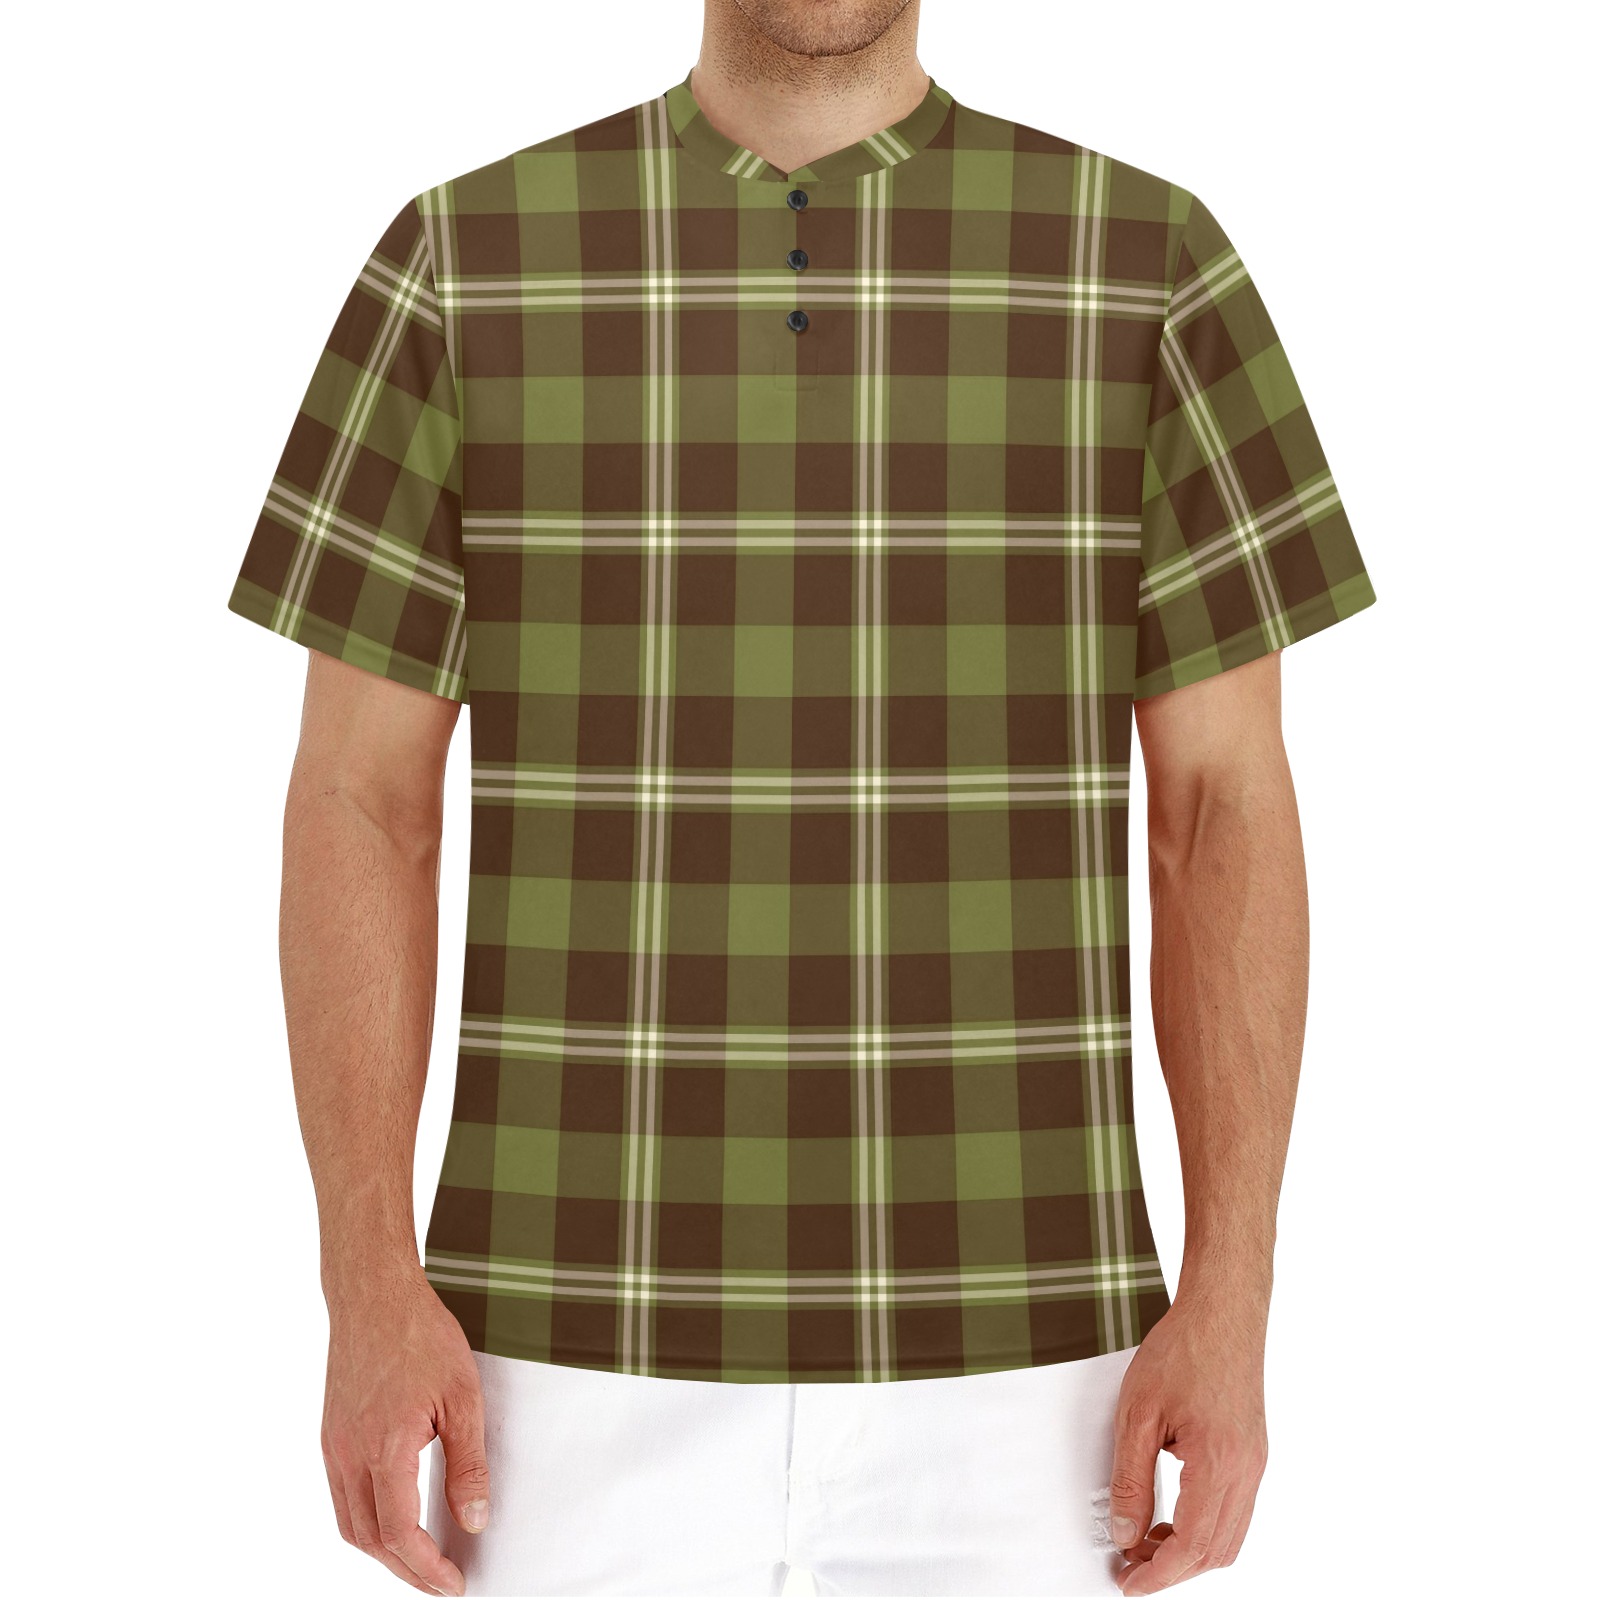 Dark Plaid Men's Henley T-Shirt (Model T75)